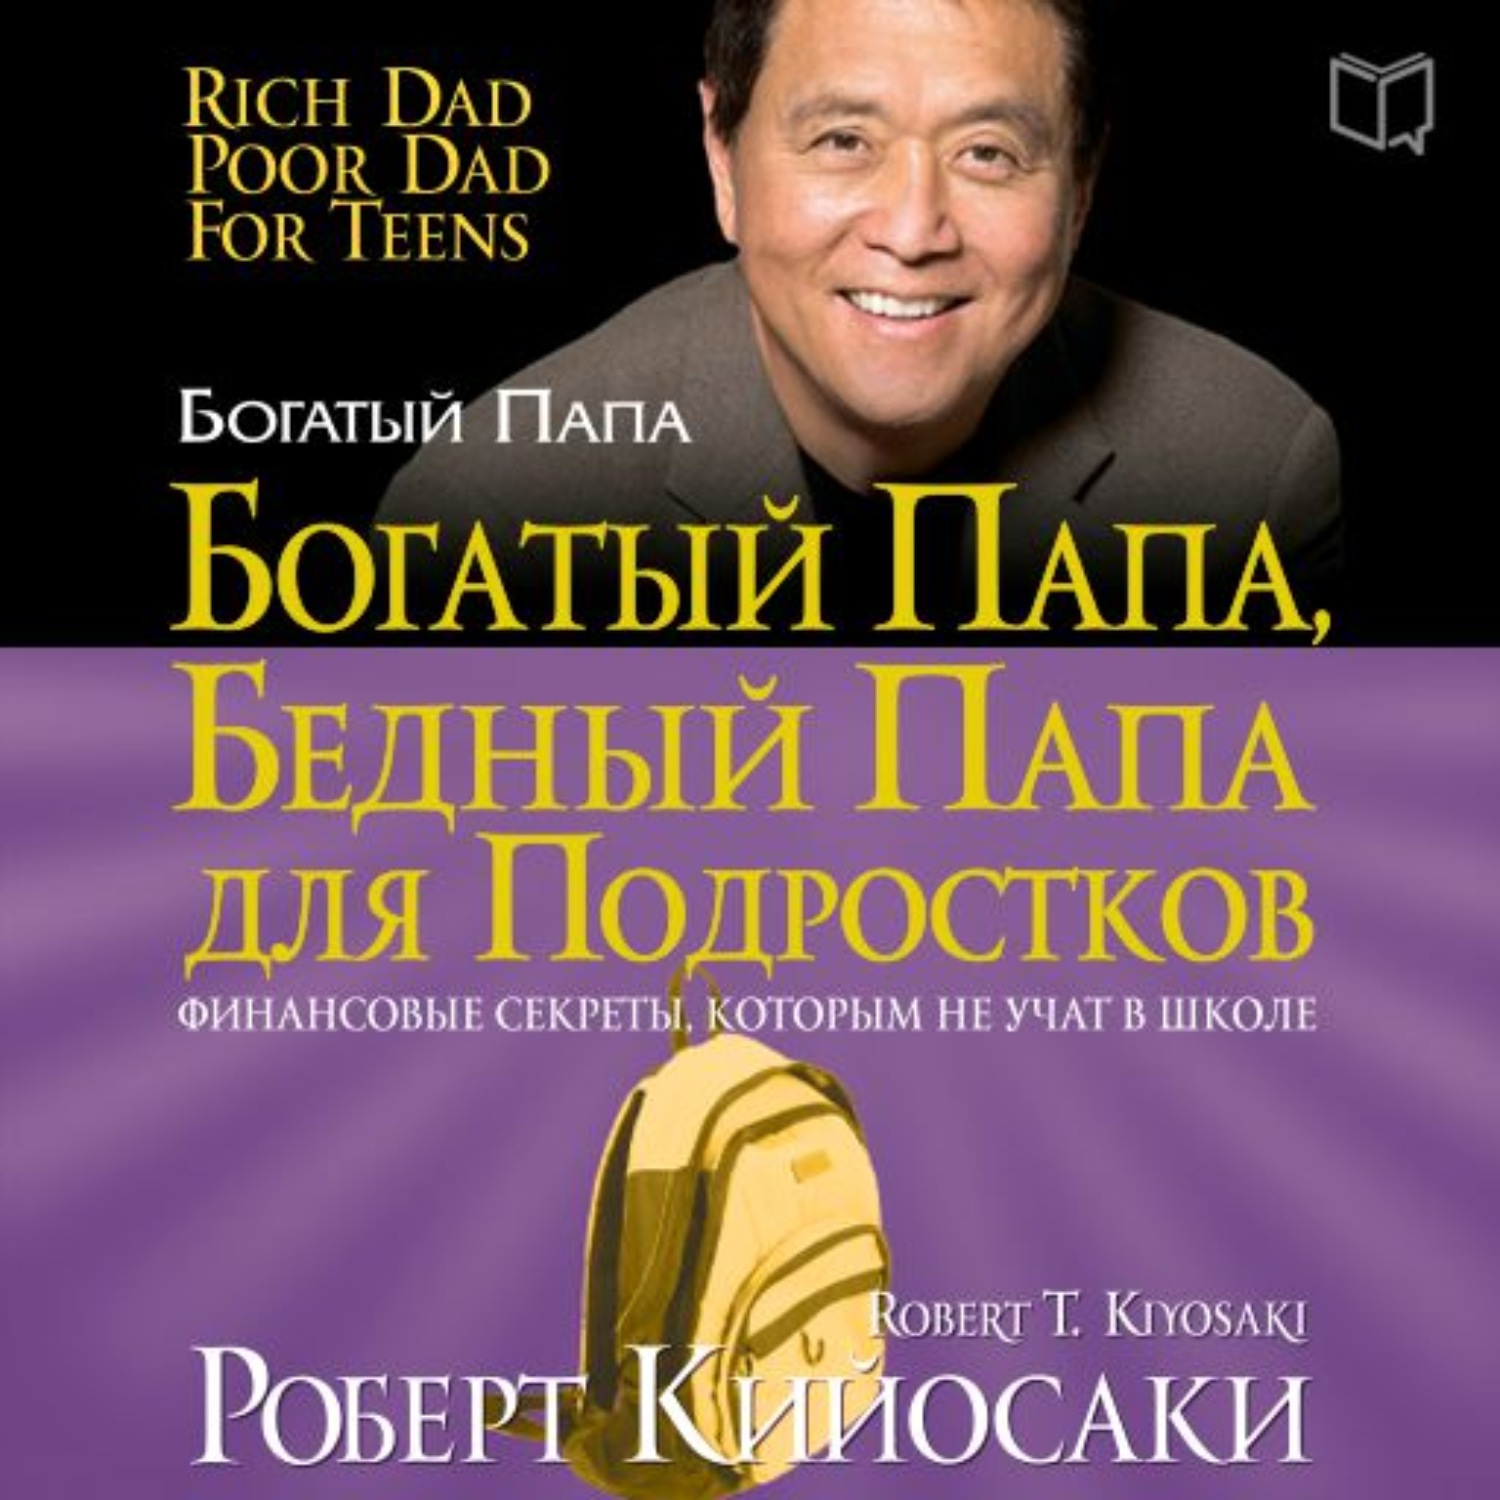 Книга про богатых и бедных. Р.Кийосаки богатый папа бедный папа.